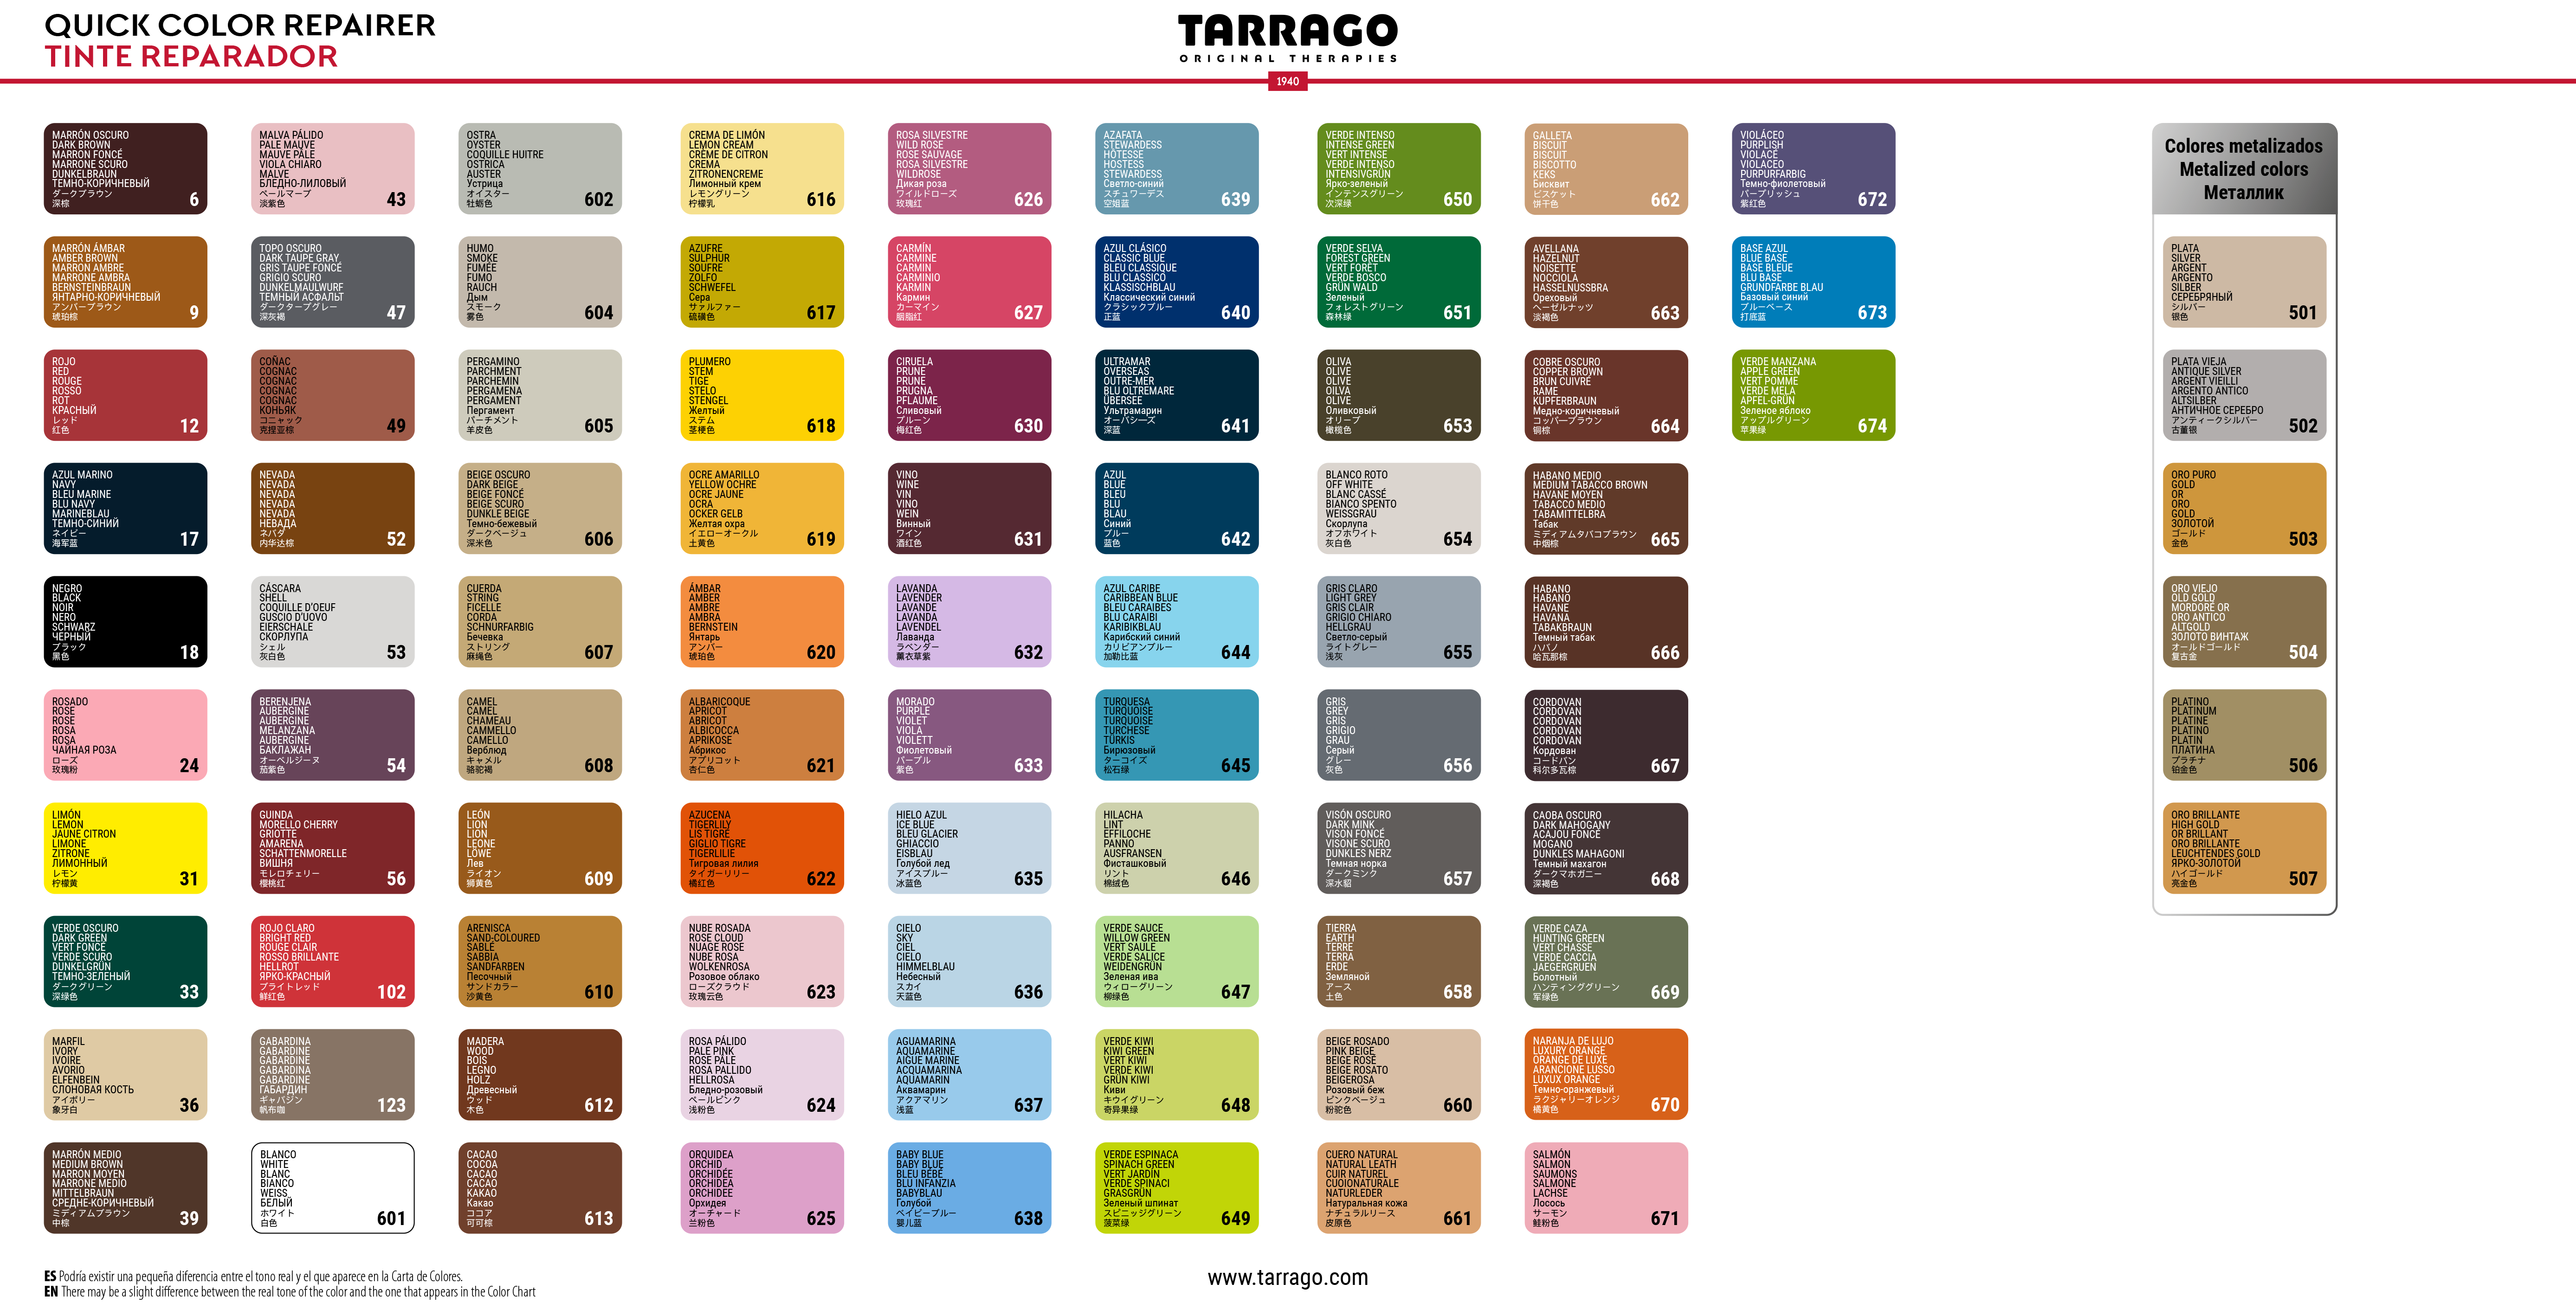 Tarrago Quick Color